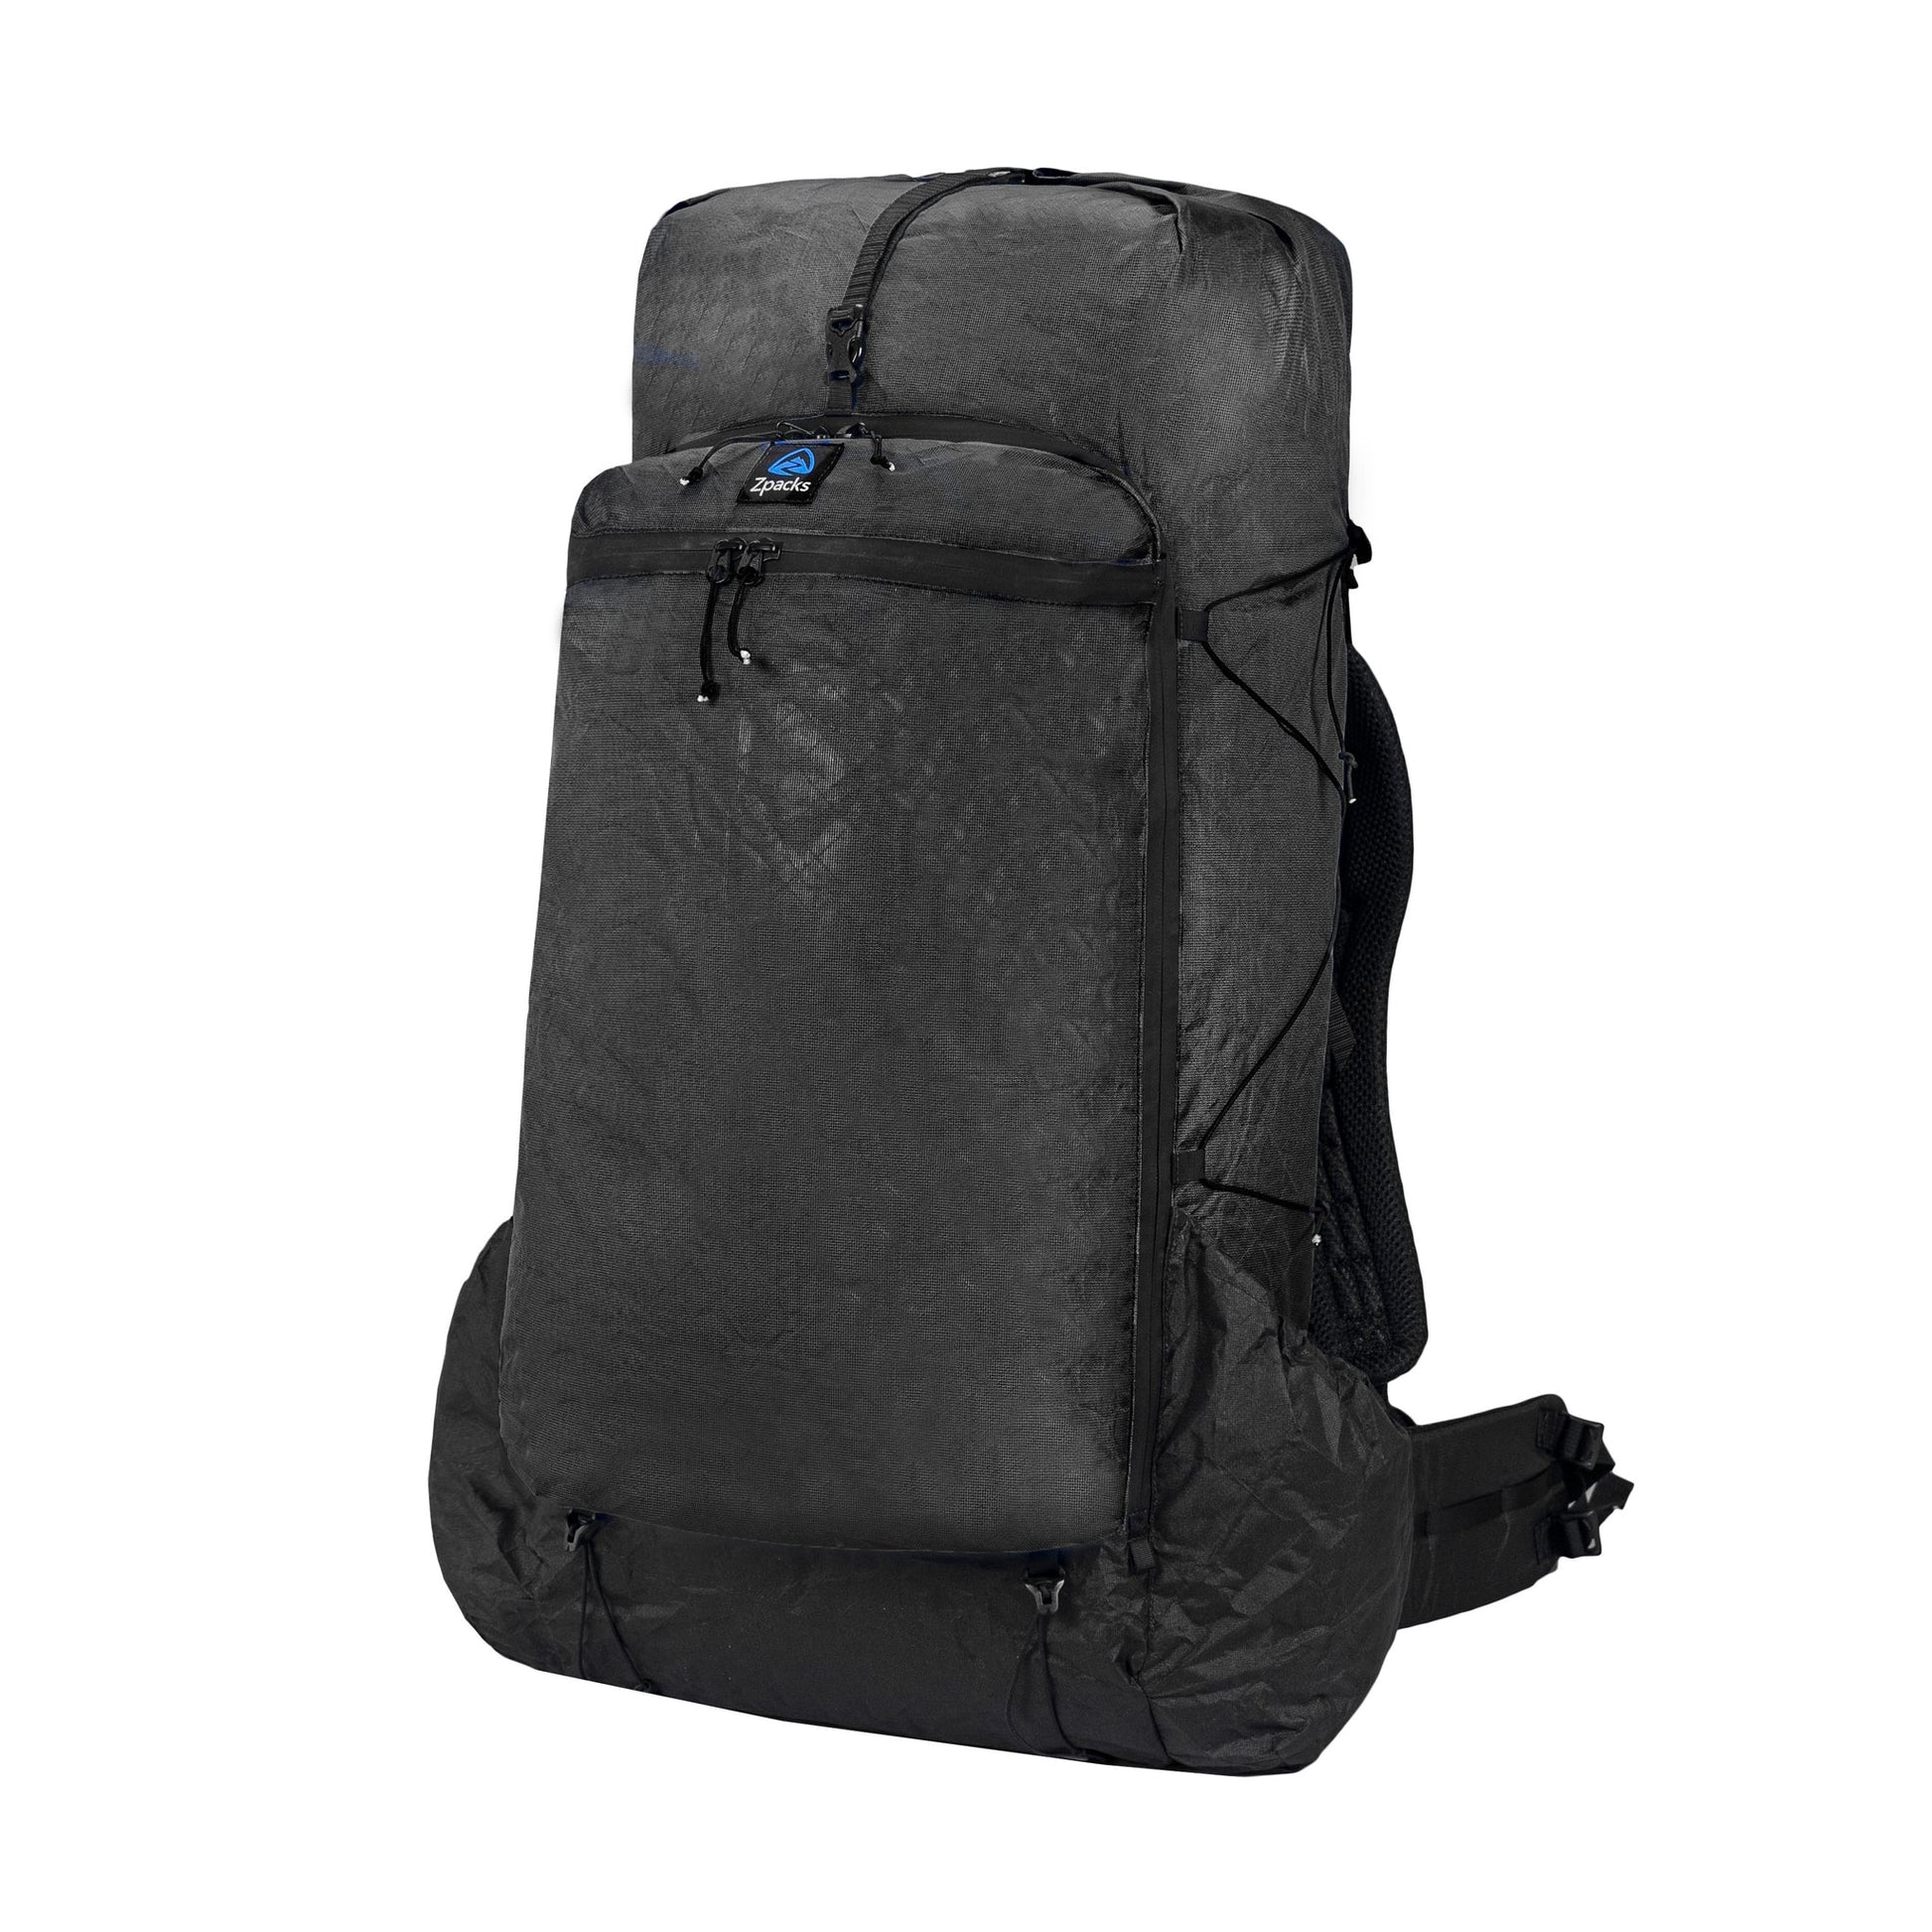 Zpacks Lumbar Pad • Backpack Add-On